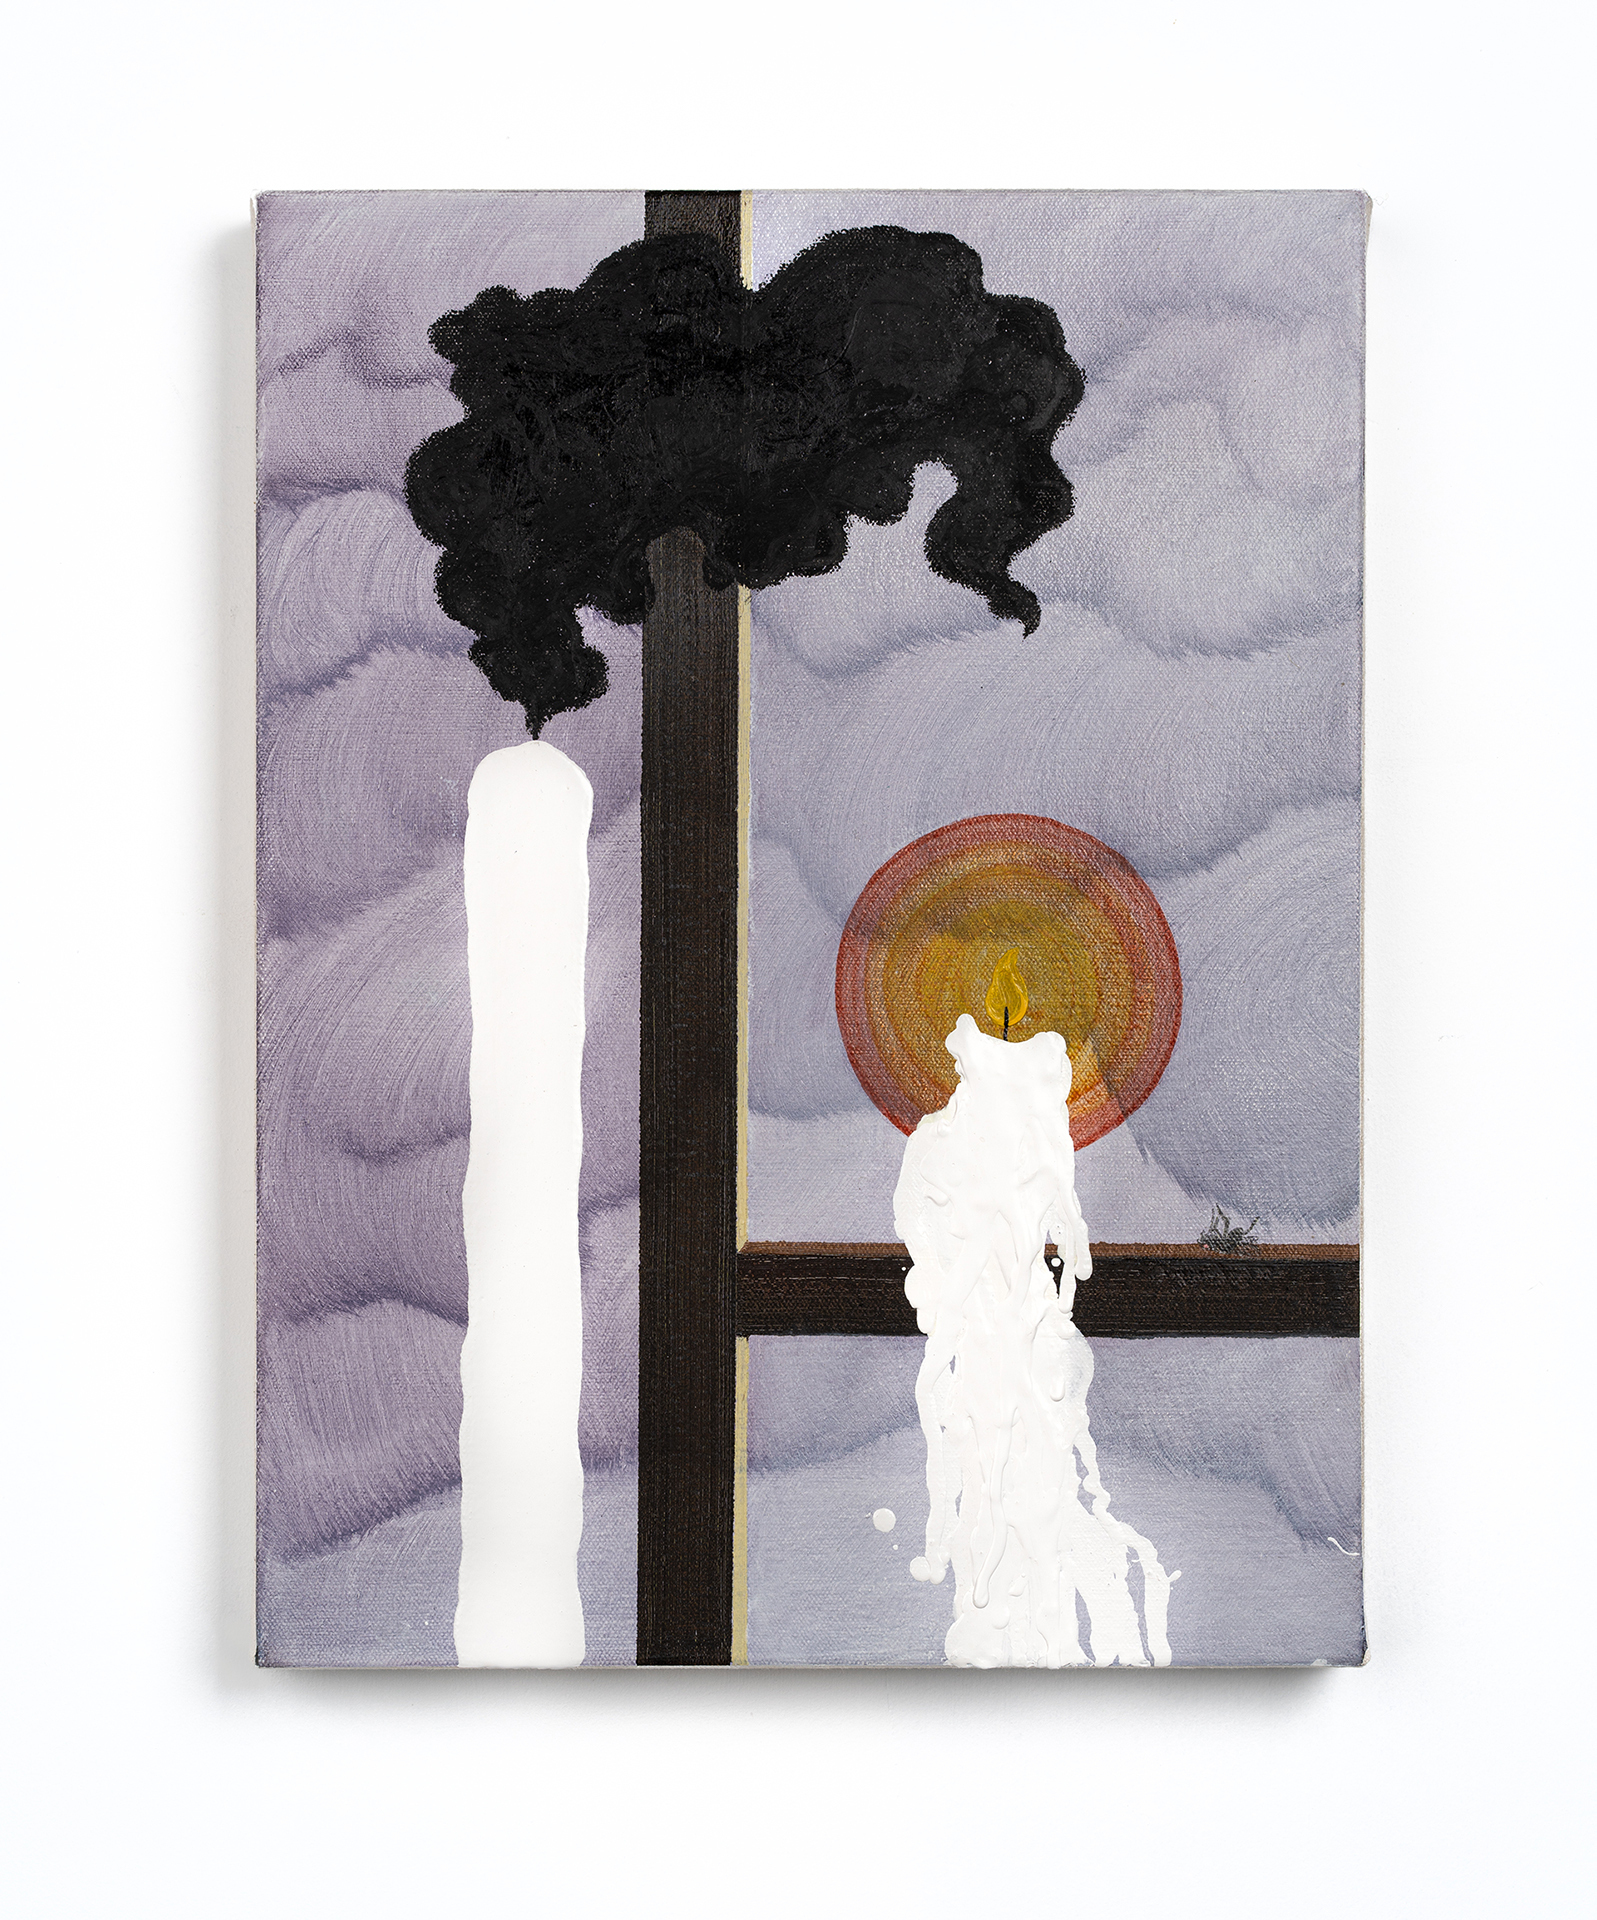 Daniel Oksenberg, Fear of Sleep, 2021, oil, pencil and industrial paint on canvas, 40x30 cm